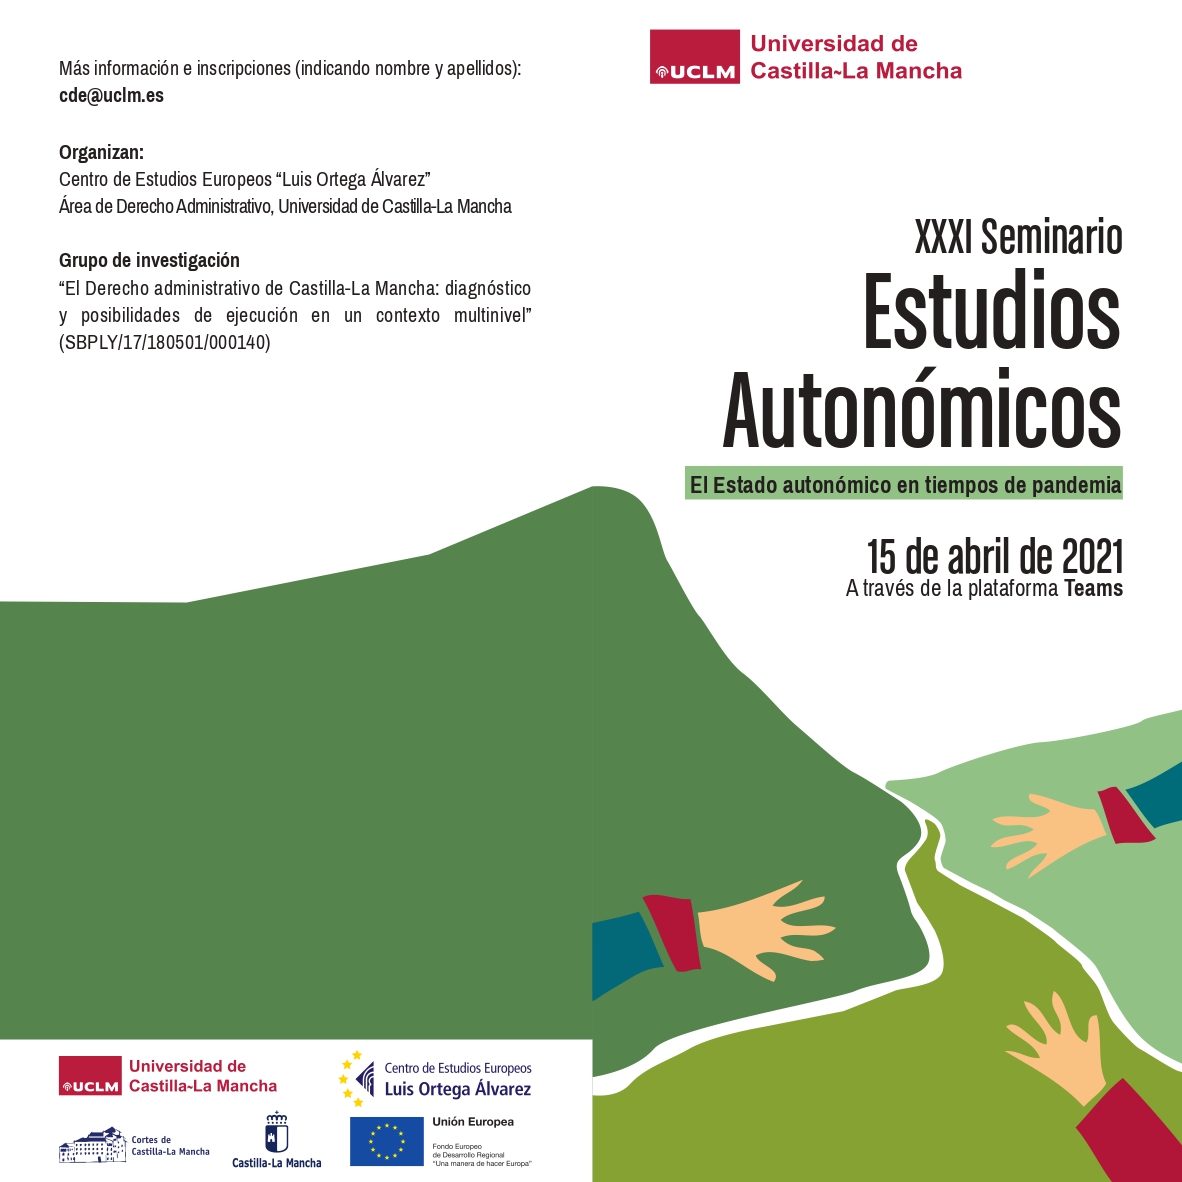 XXXI Seminario Estudios Autonómicos: El Estado autonómico en tiempos de pandemia